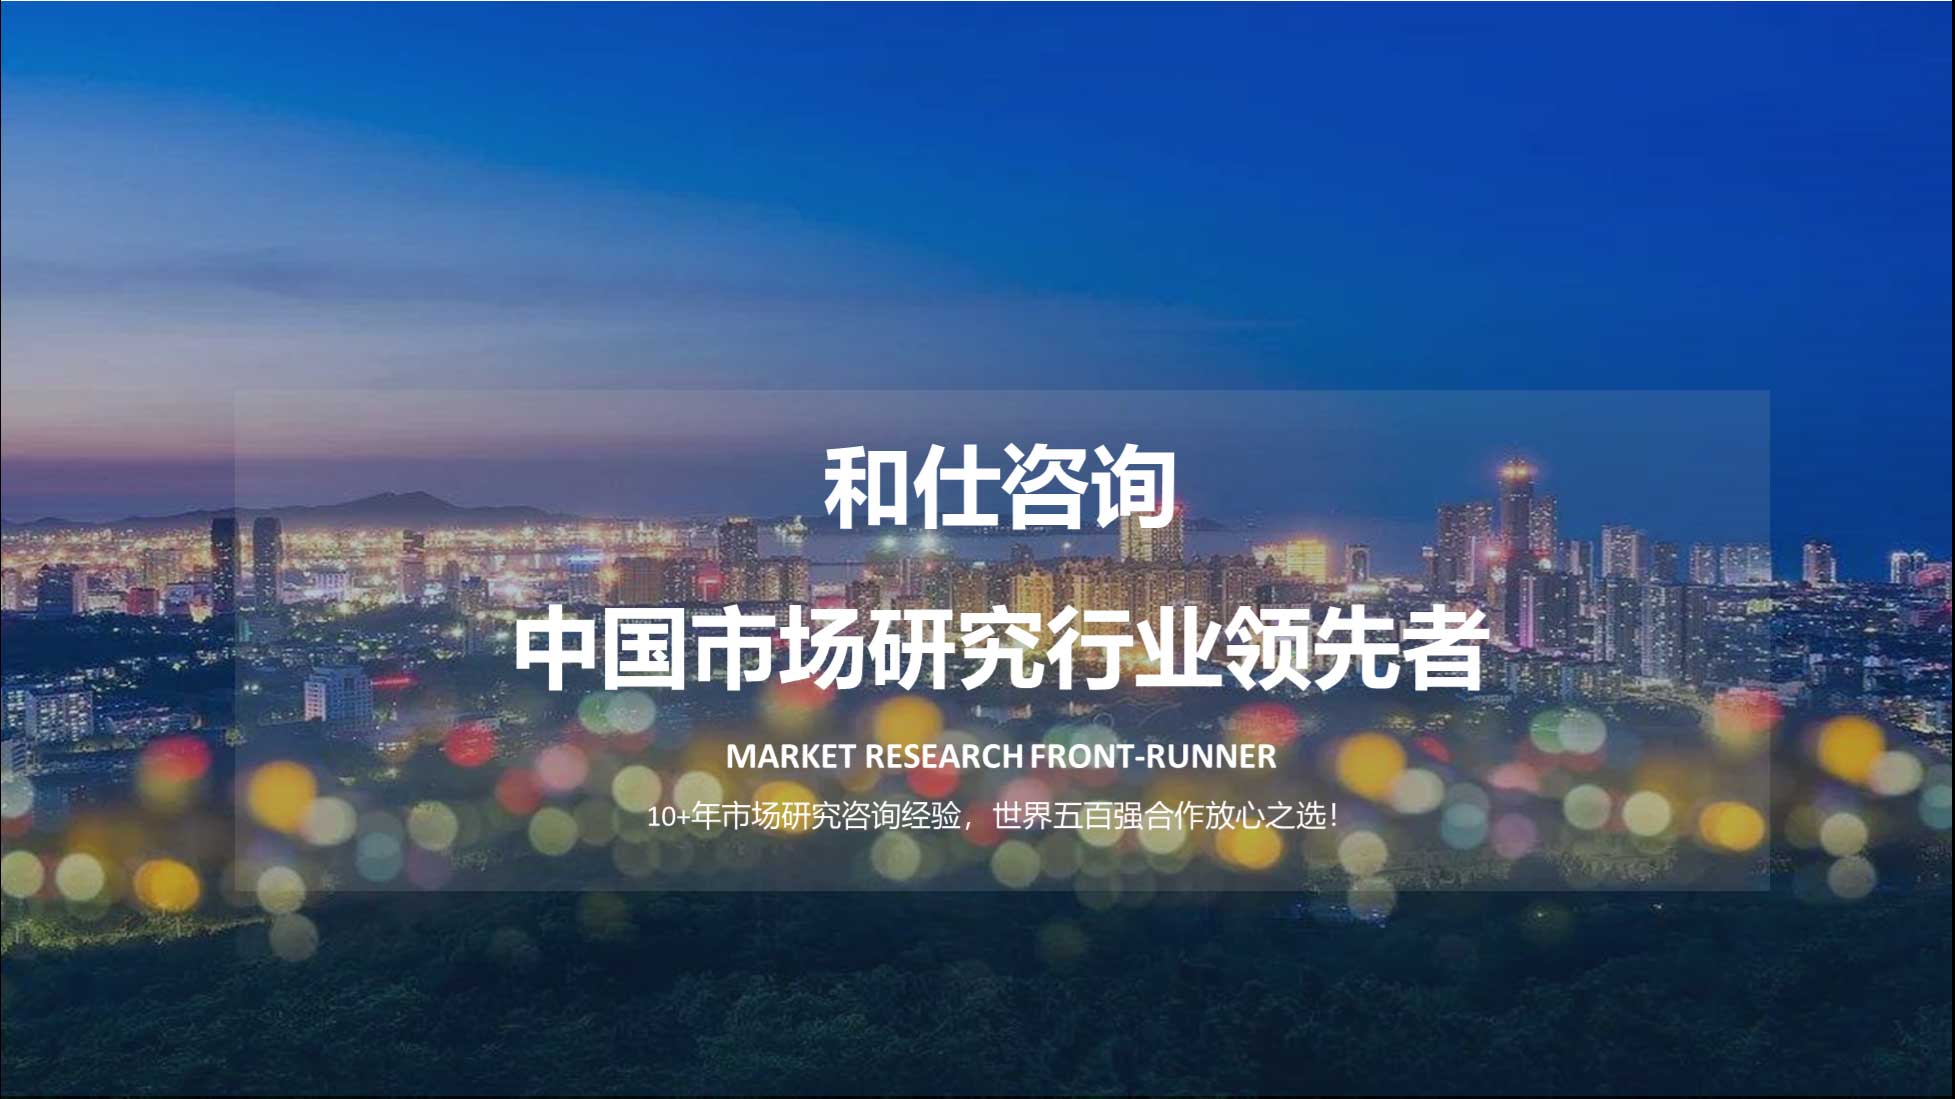 利澳平台注册开户(中国游)官方网站